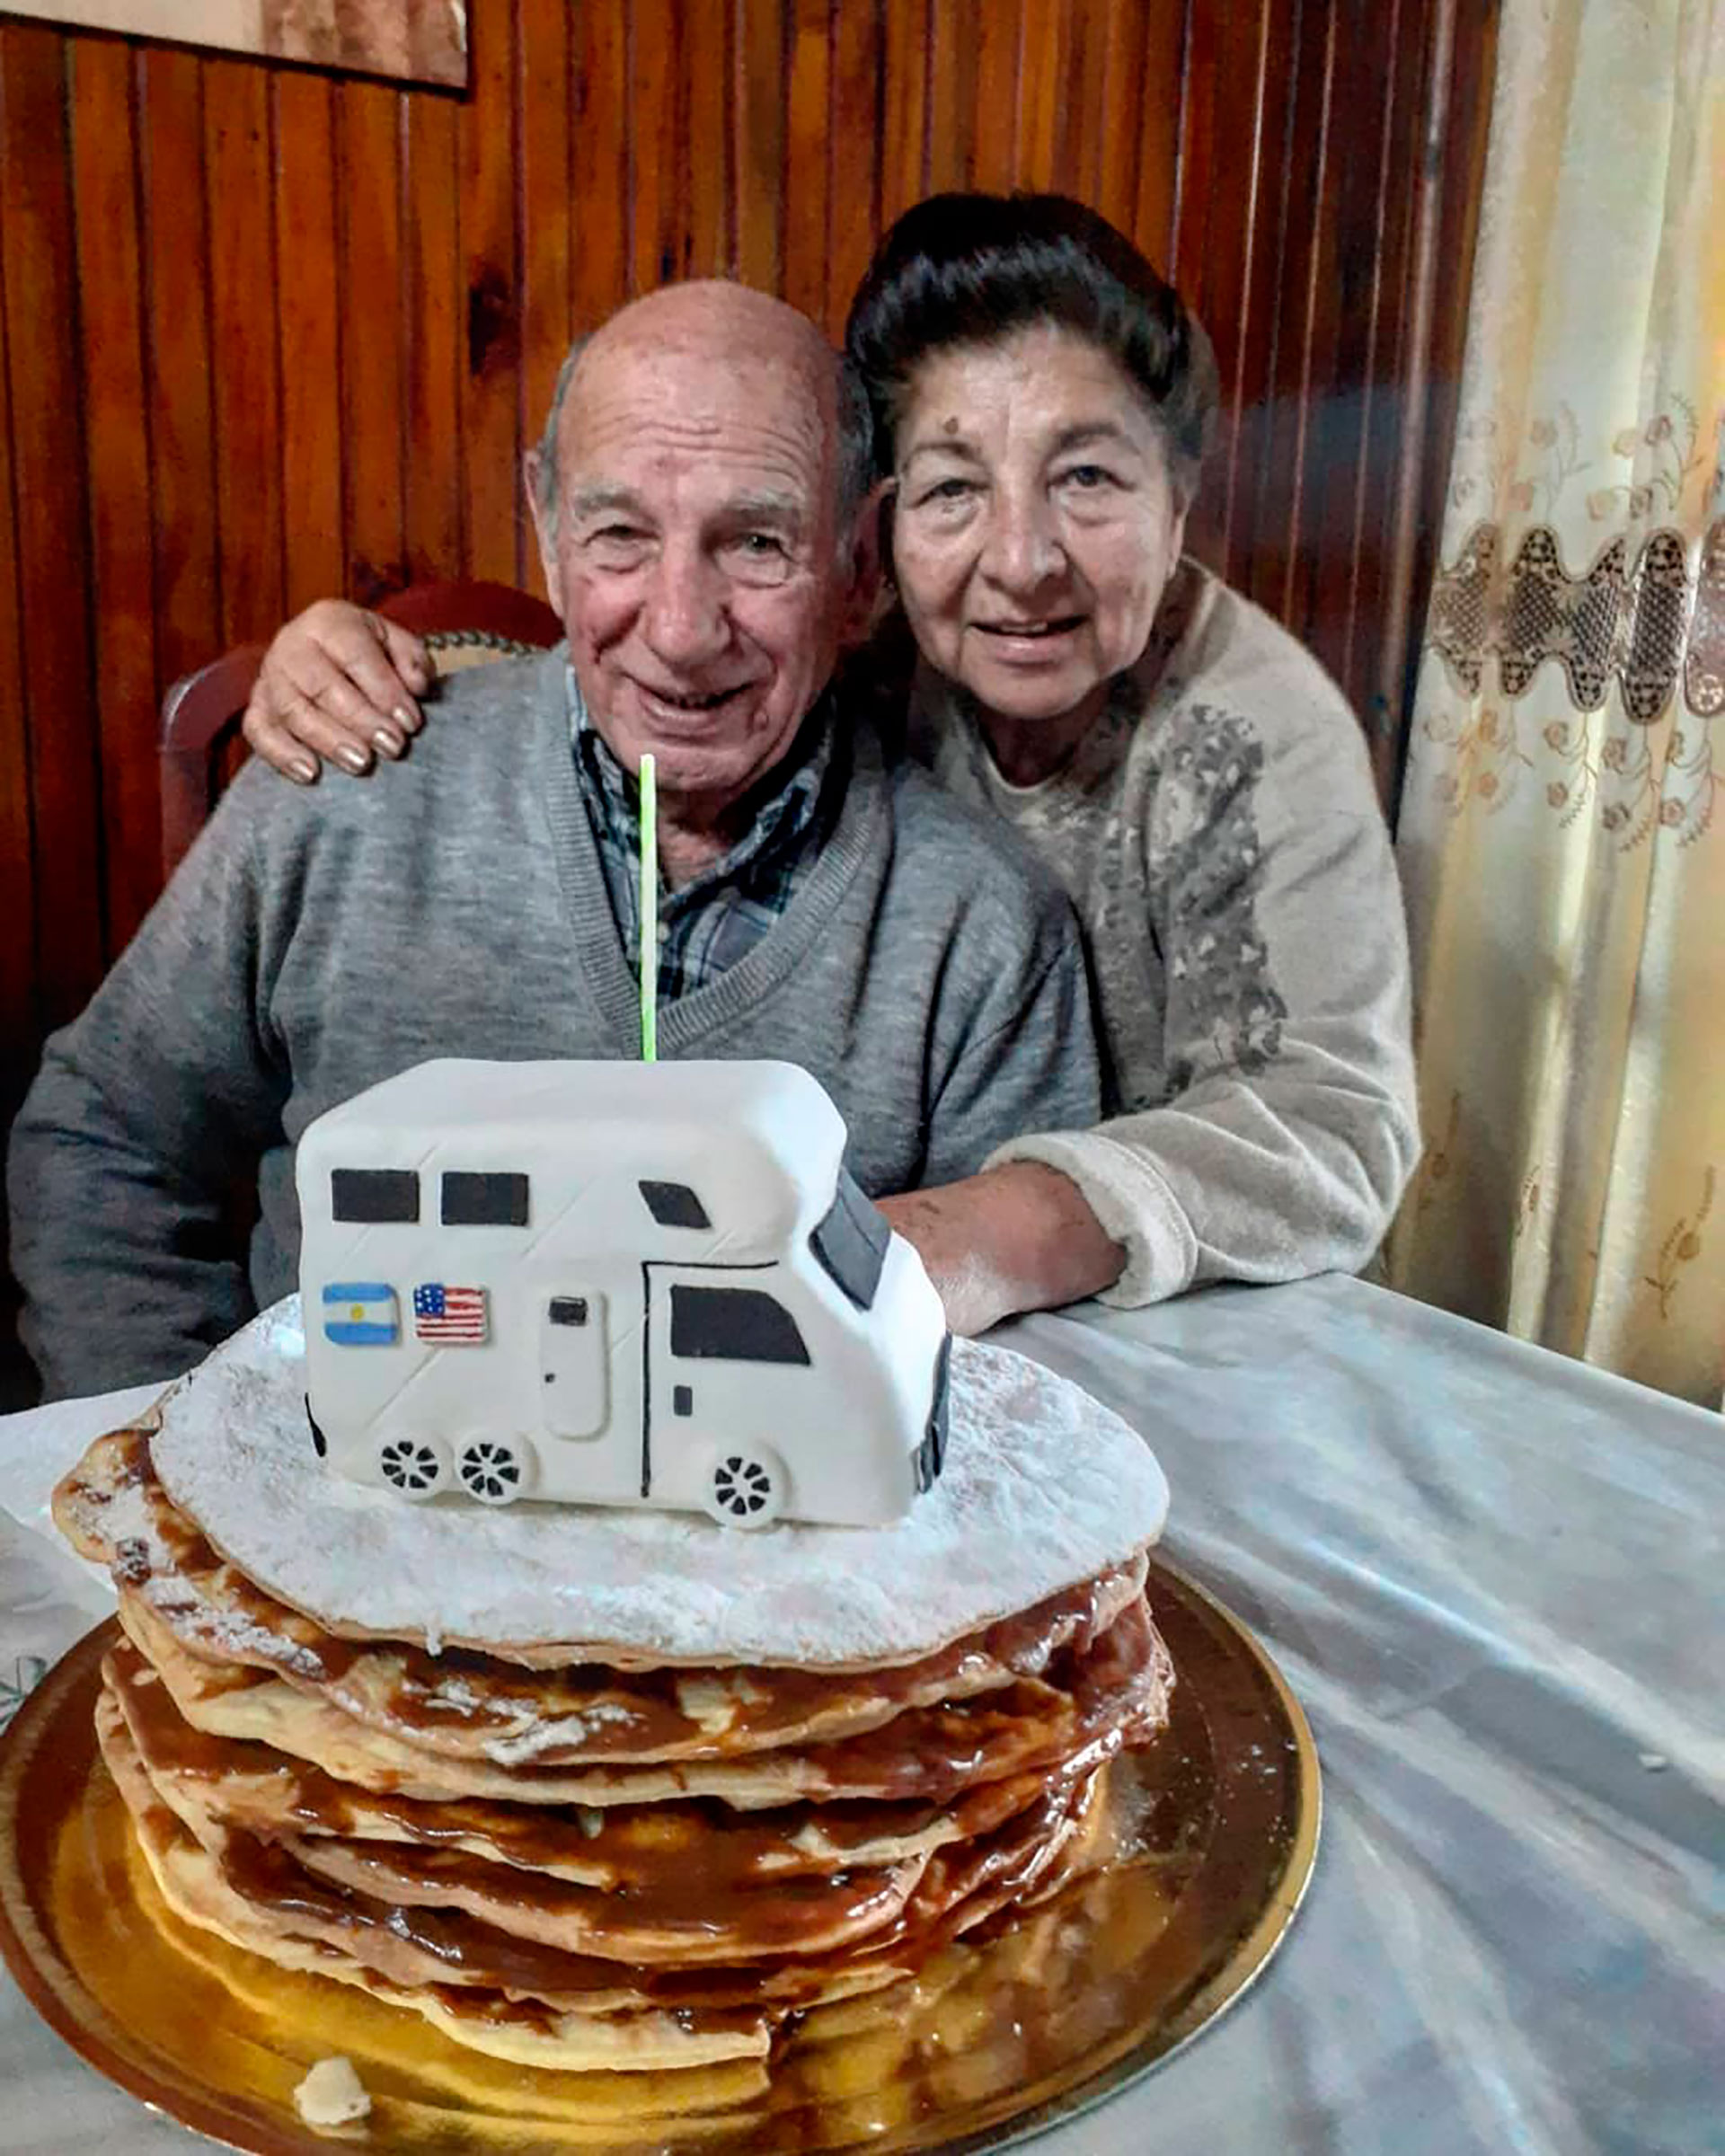 El cumpleaños 78 de Juan con una torta que ya tiene una mini motorhome sobre la torta (@proyectomiami2021)